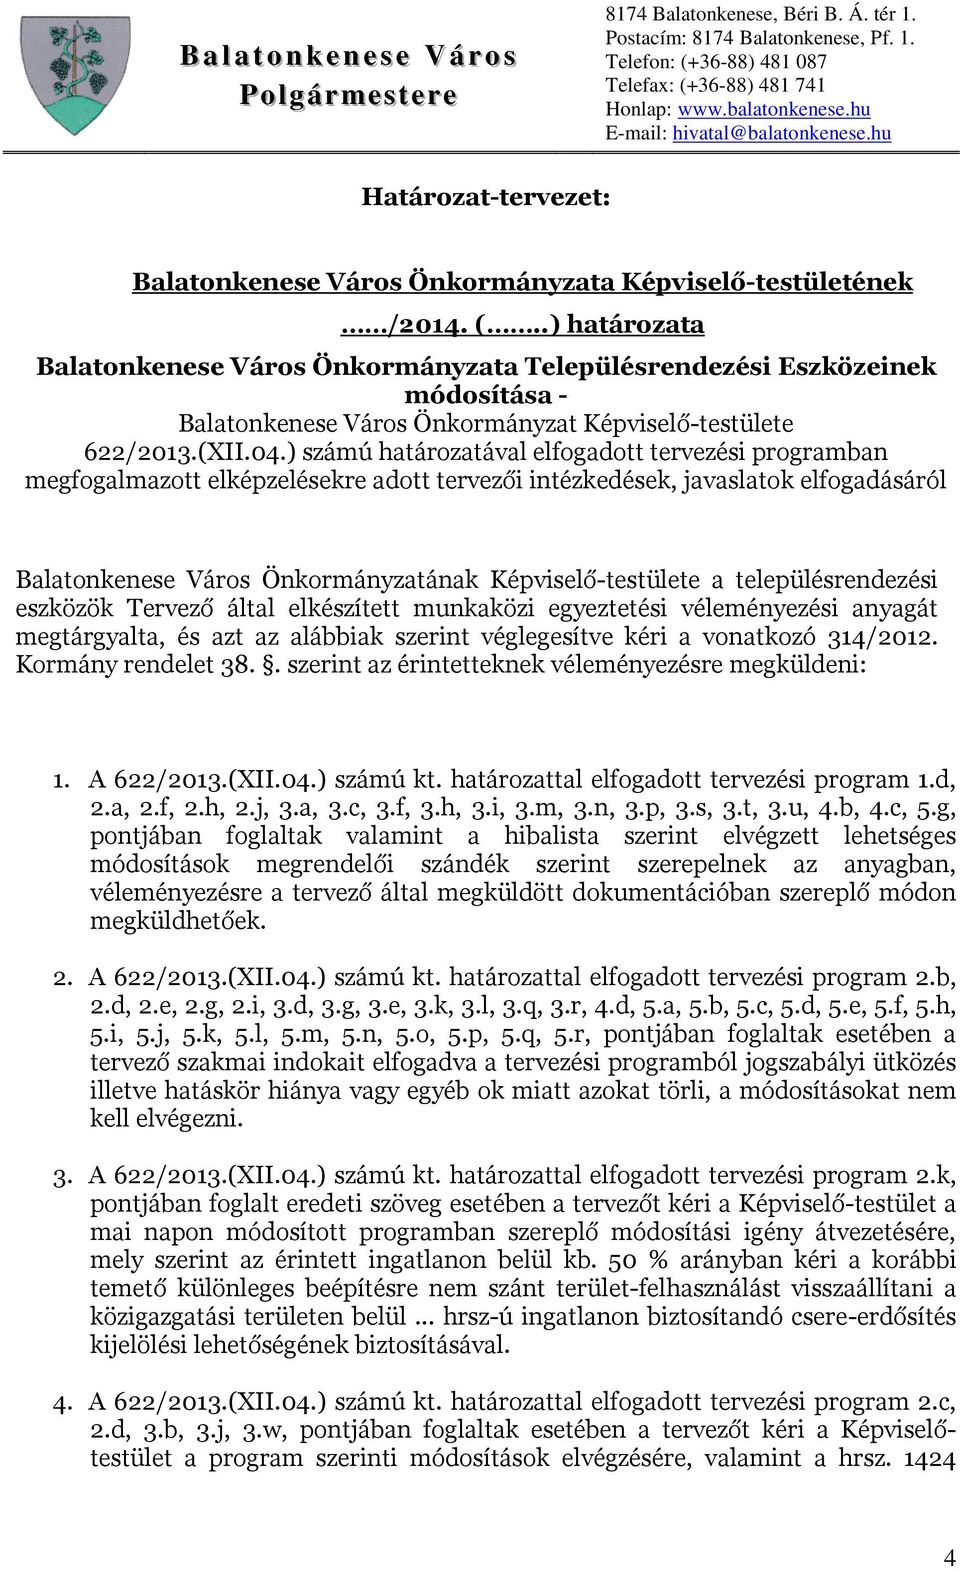 ) számú határozatával elfogadott tervezési programban megfogalmazott elképzelésekre adott tervezői intézkedések, javaslatok elfogadásáról Balatonkenese Város Önkormányzatának Képviselő-testülete a